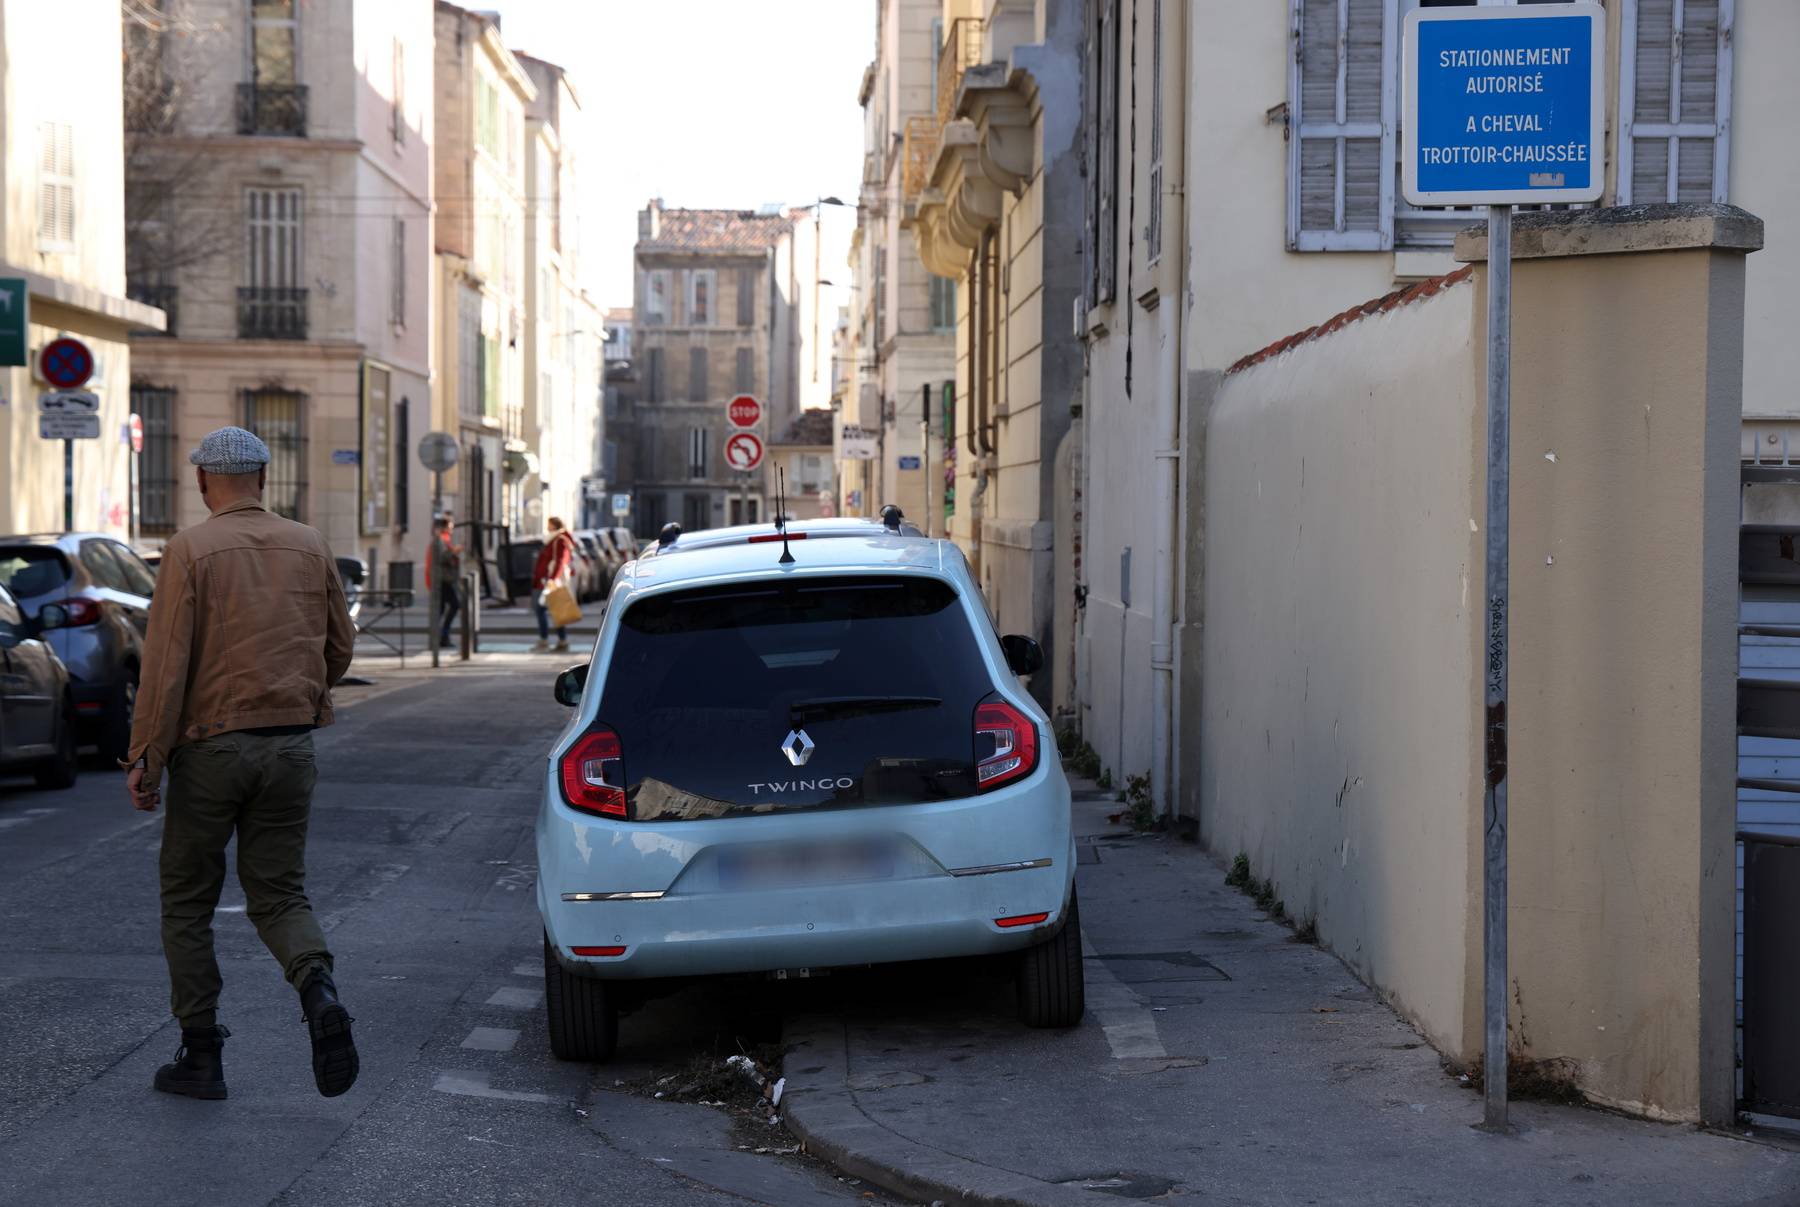 Marseille : la Ville veut sauter l'obstacle du stationnement à cheval